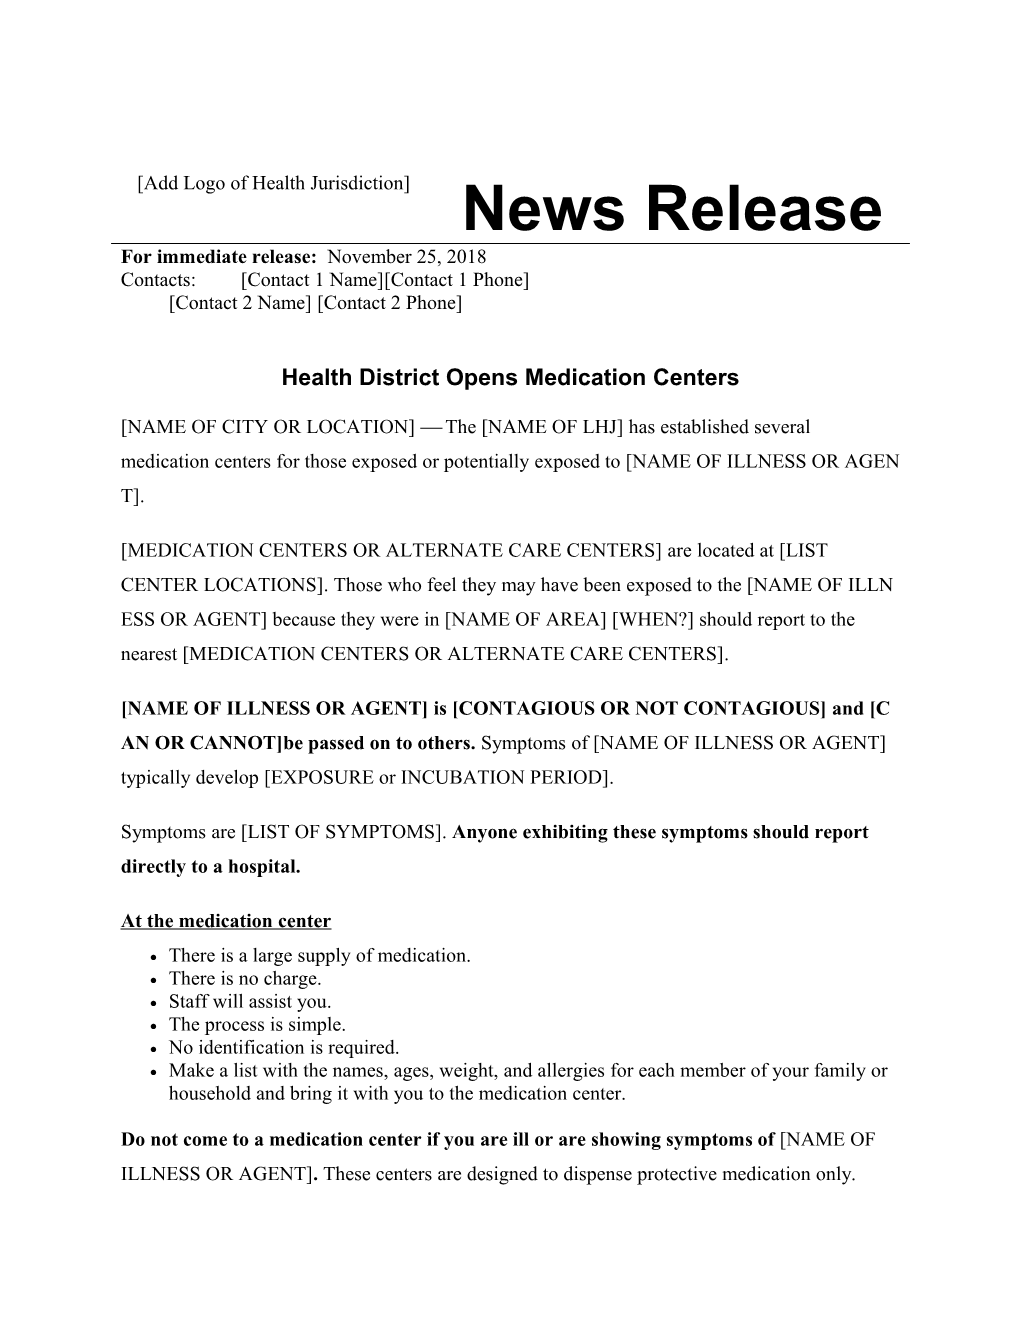 Press Release: Medication Centers Established